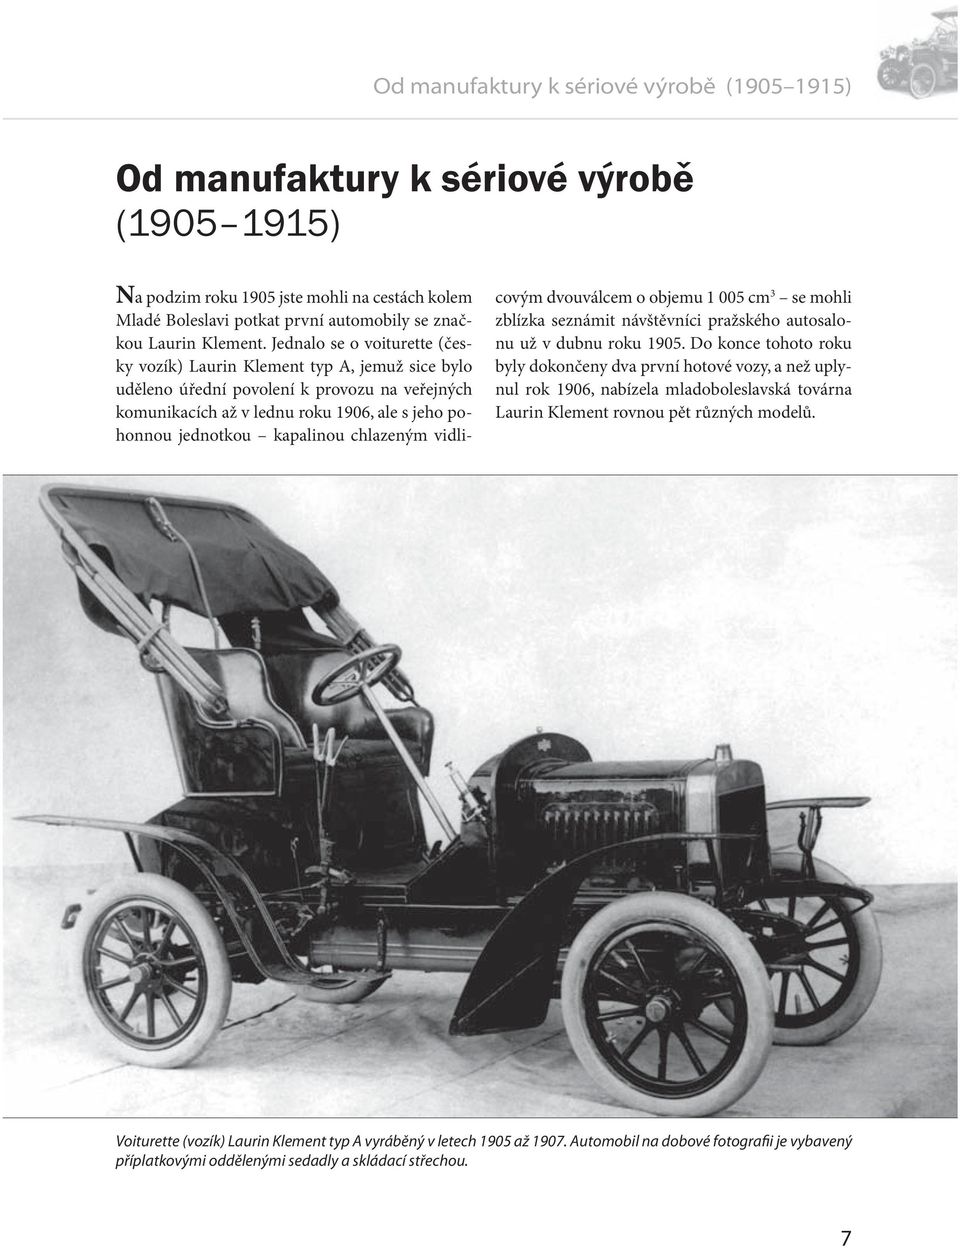 Jednalo se o voiturette (česky vozík) Laurin Klement typ A, jemuž sice bylo uděleno úřední povolení k provozu na veřejných komunikacích až v lednu roku 1906, ale s jeho pohonnou jednotkou kapalinou